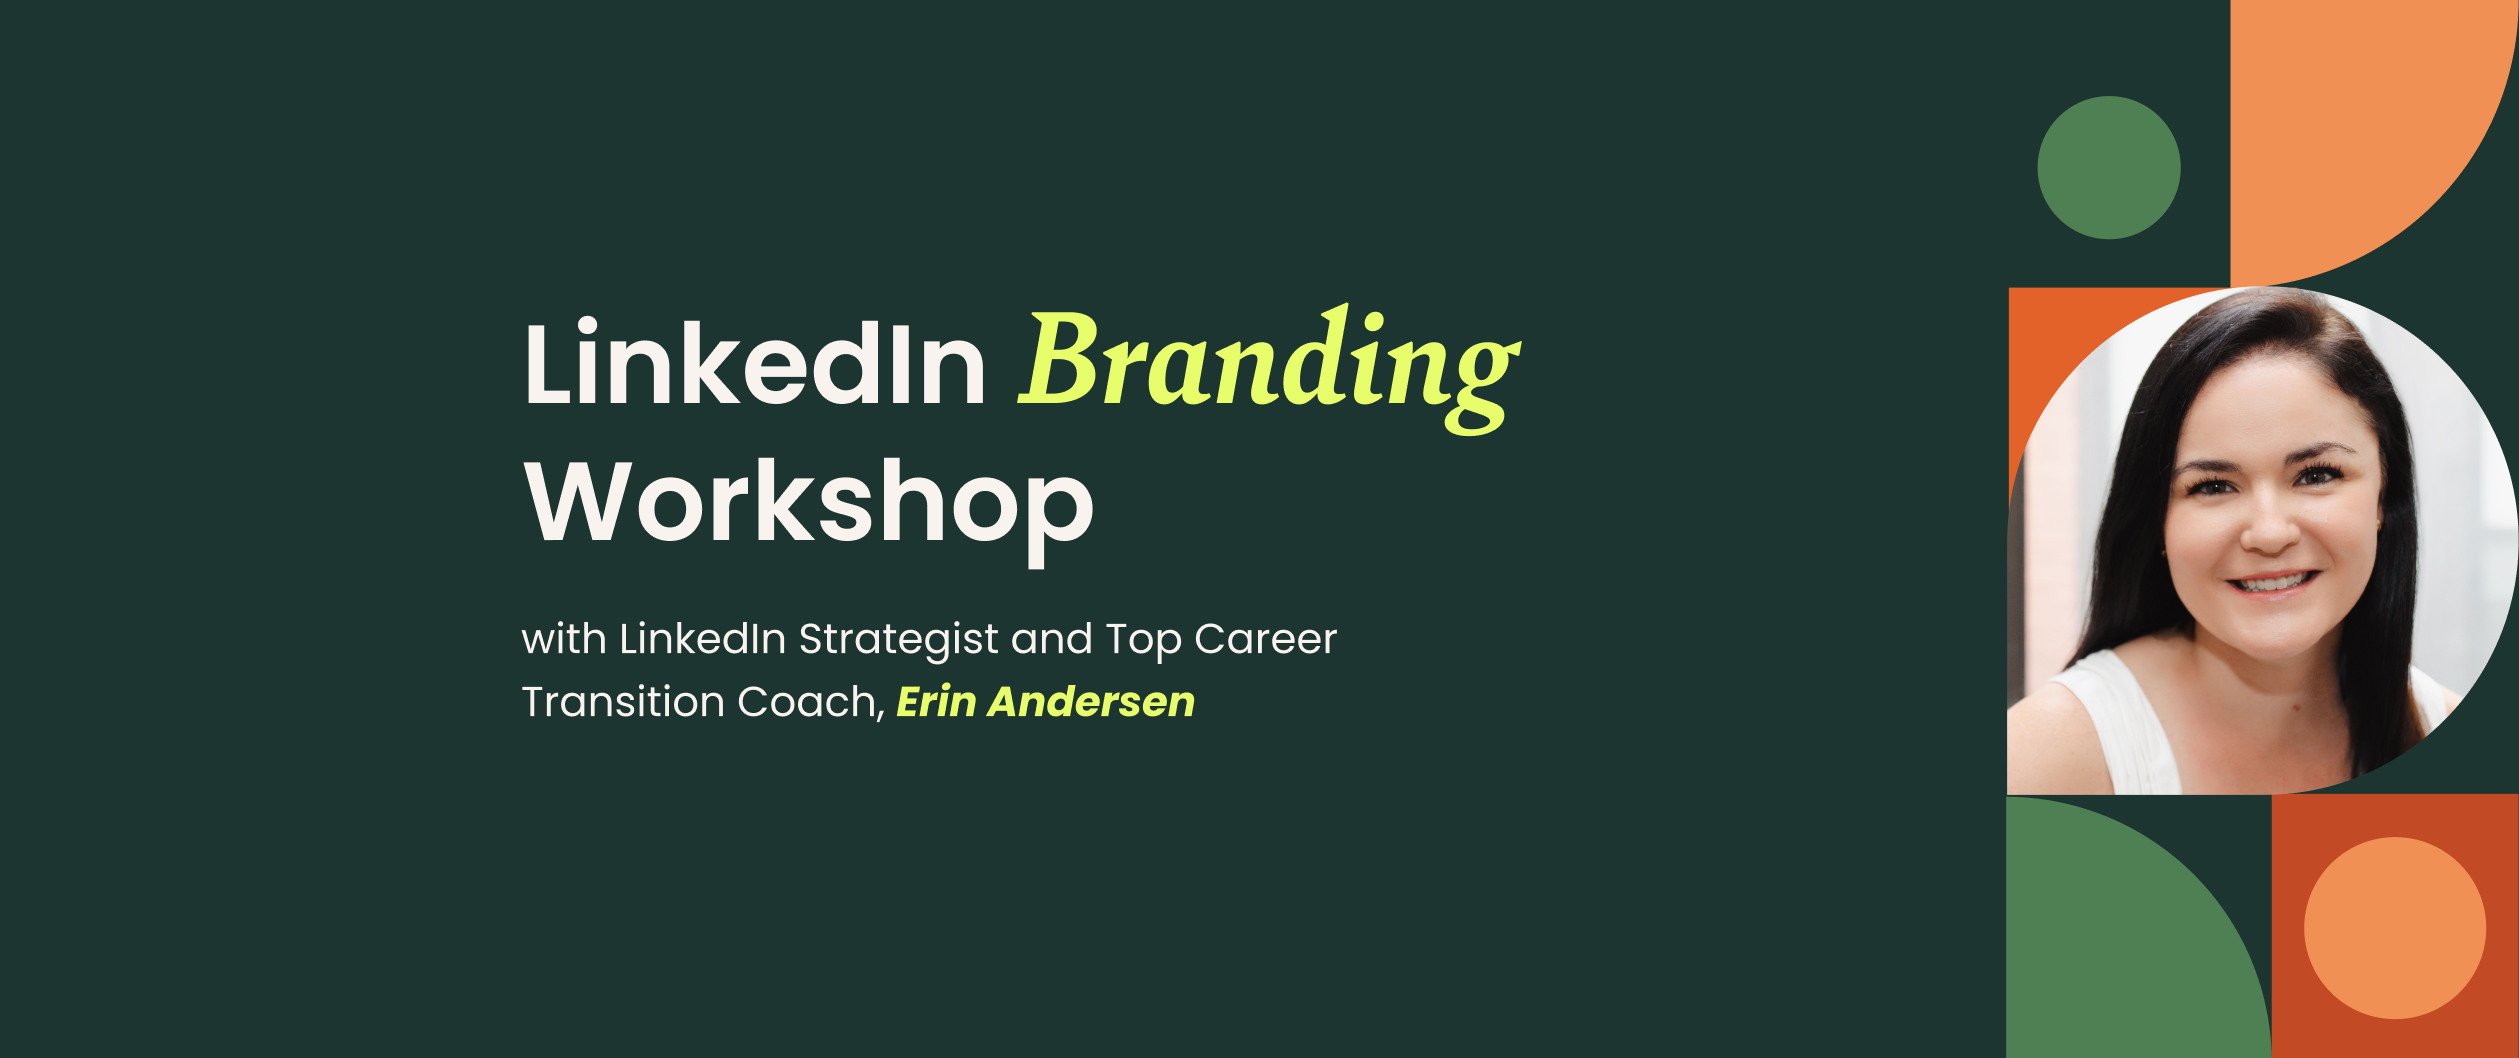 LinkedIn Branding Workshop with Erin Andersen Hero Image